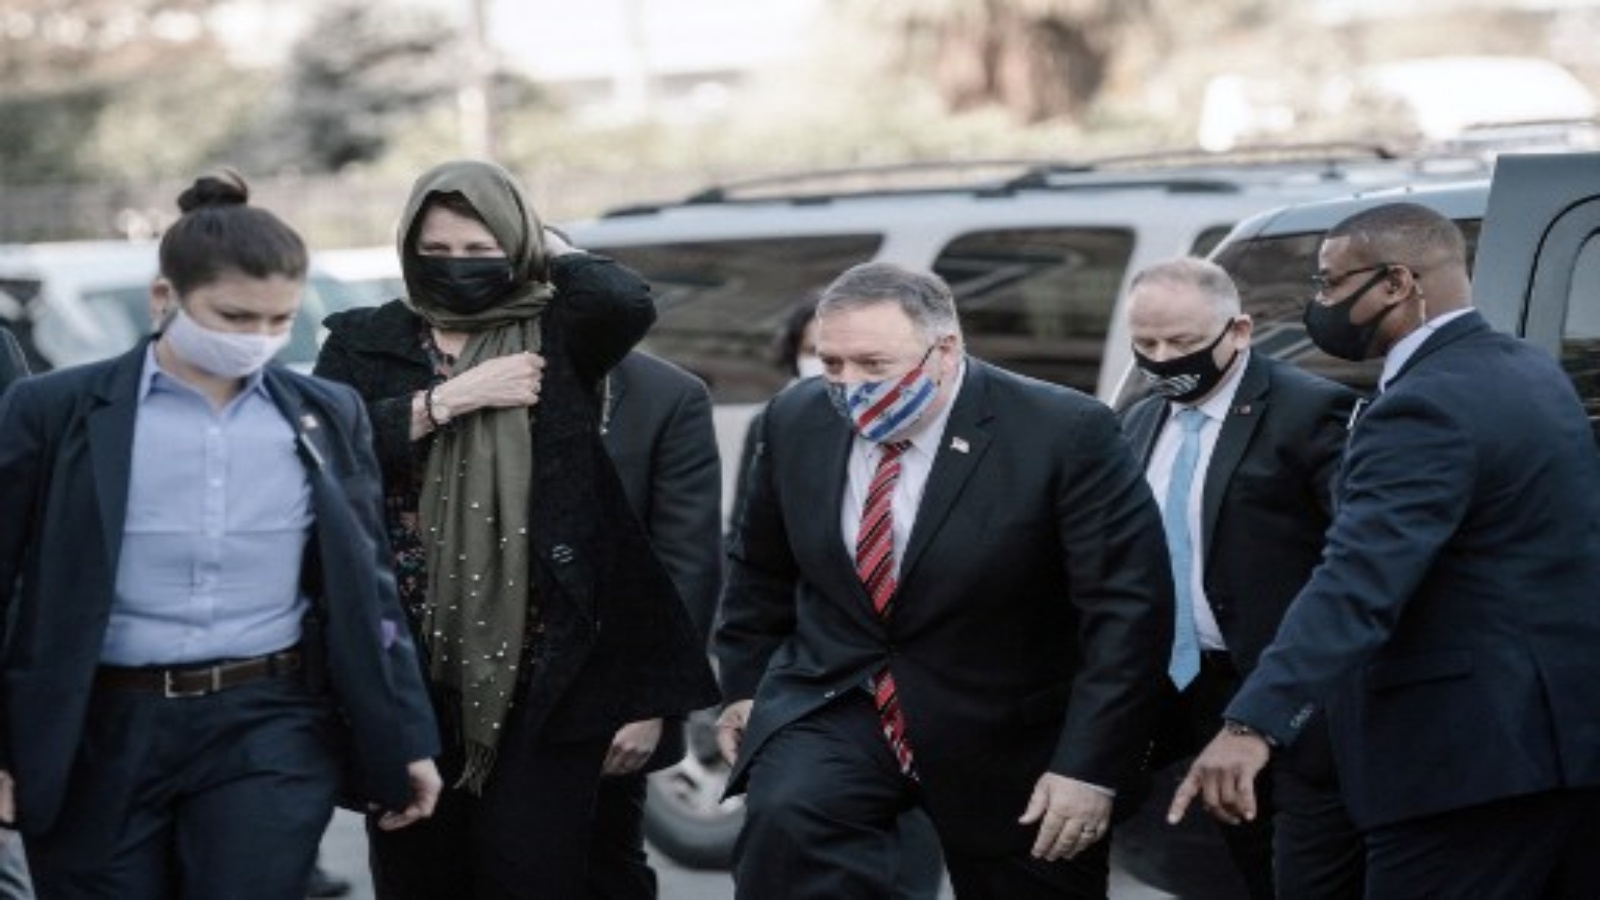 وزير الخارجية مايك بومبيو (وسط) وزوجته سوزان (الثانية من اليسار) إلى مسجد رستم باشا خلال زيارة لمواقع دينية في اسطنبول ، في 17 نوفمبر 2020